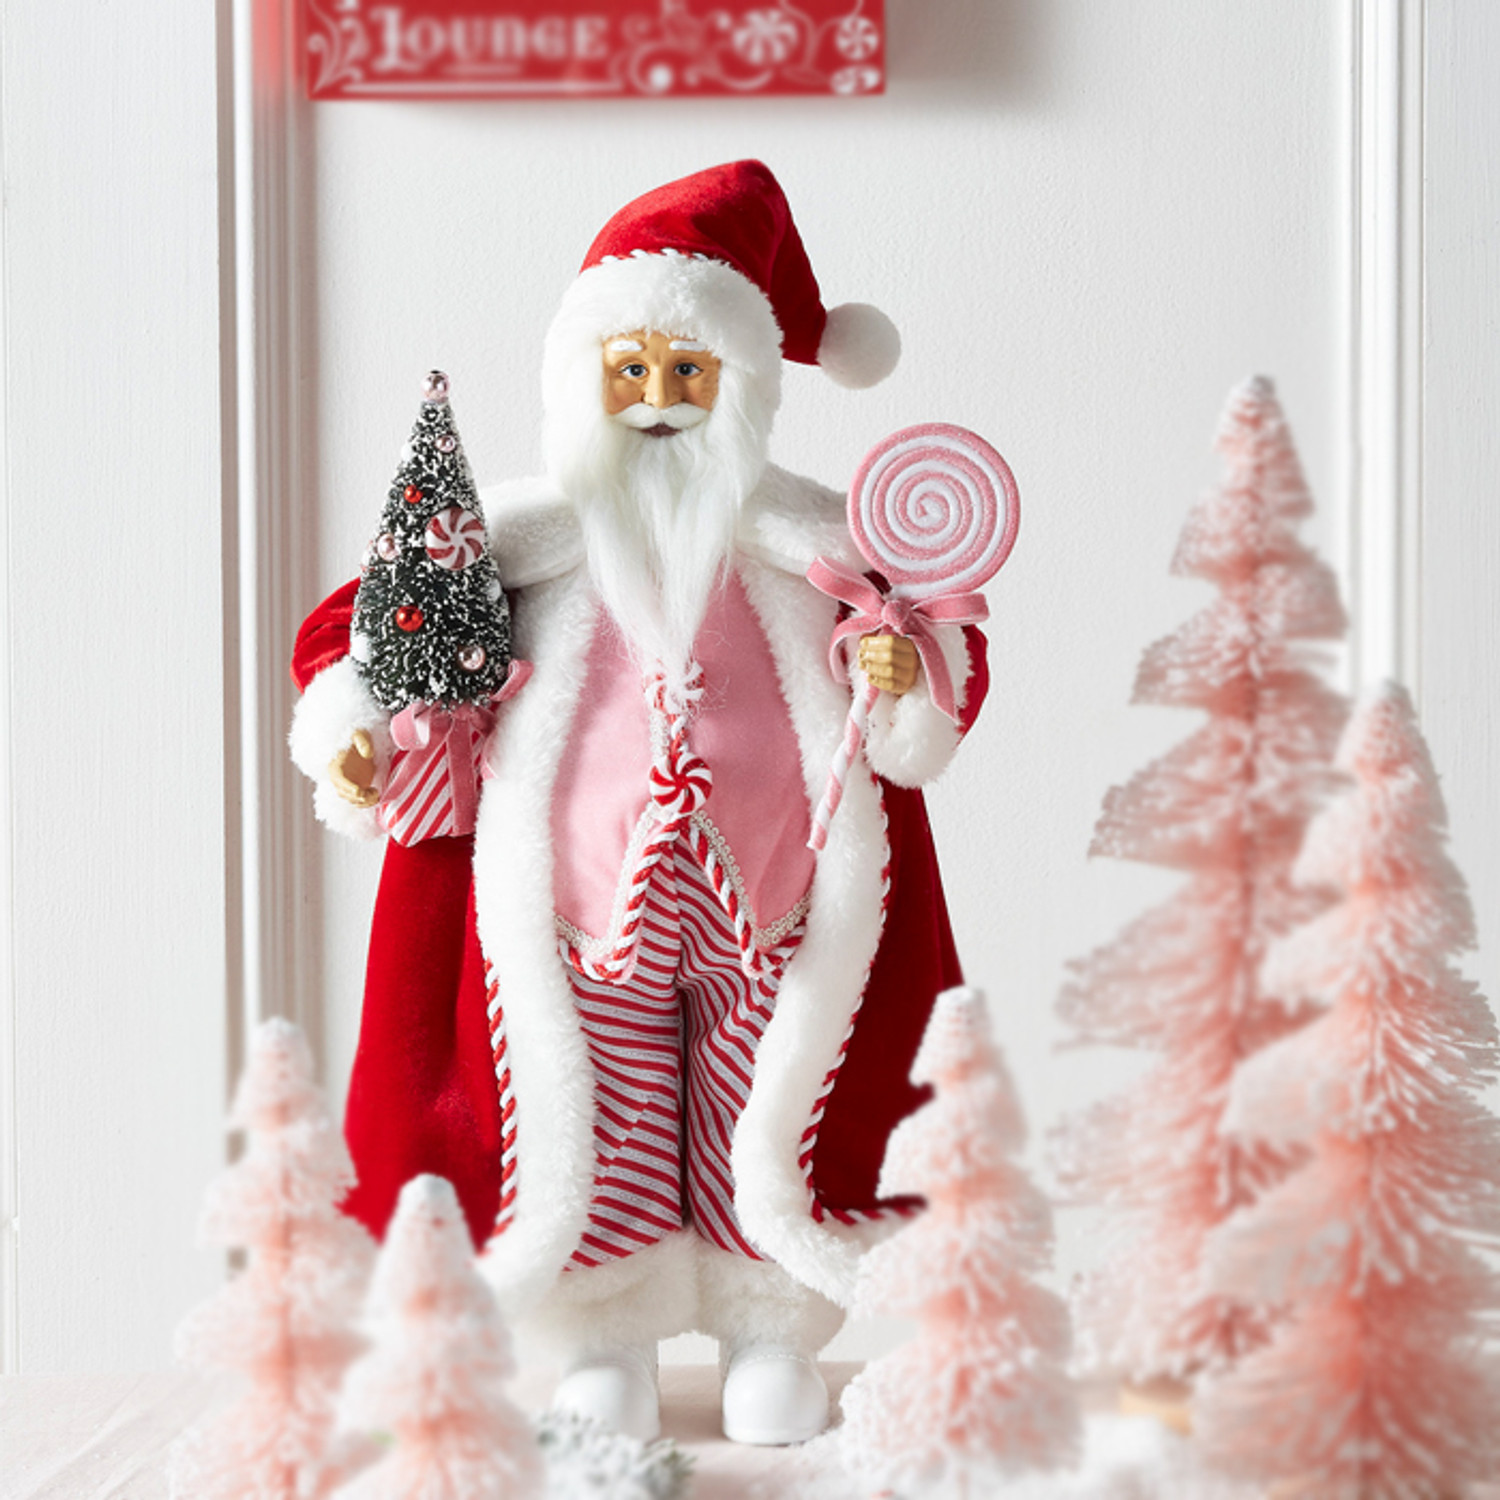 RAZ Imports Peppermint Santa Ornament at Von Maur